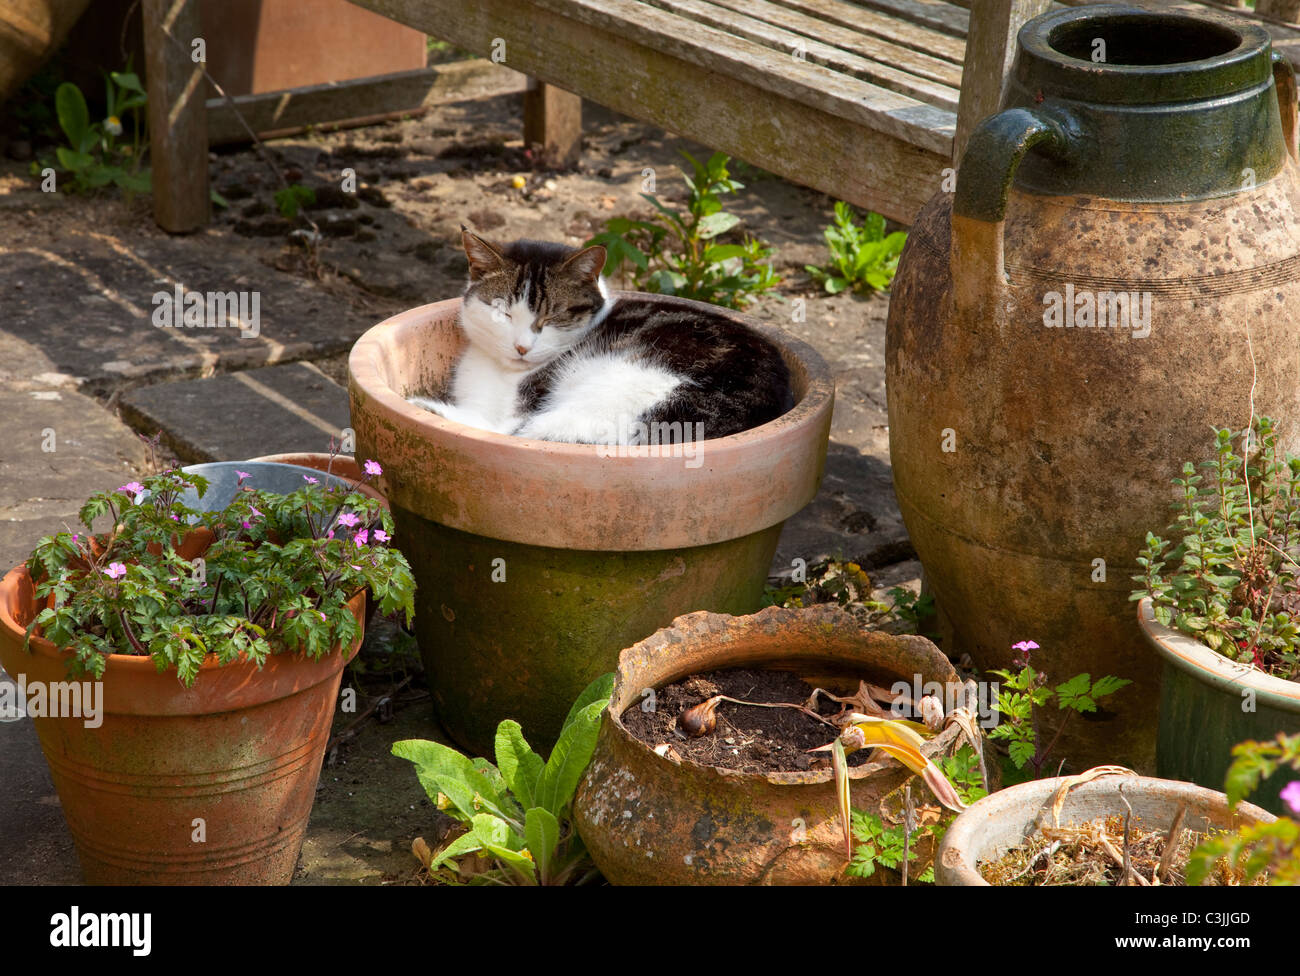 Katze schläft in einem Terrakotta-Topf im englischen Garten Stockfotografie  - Alamy